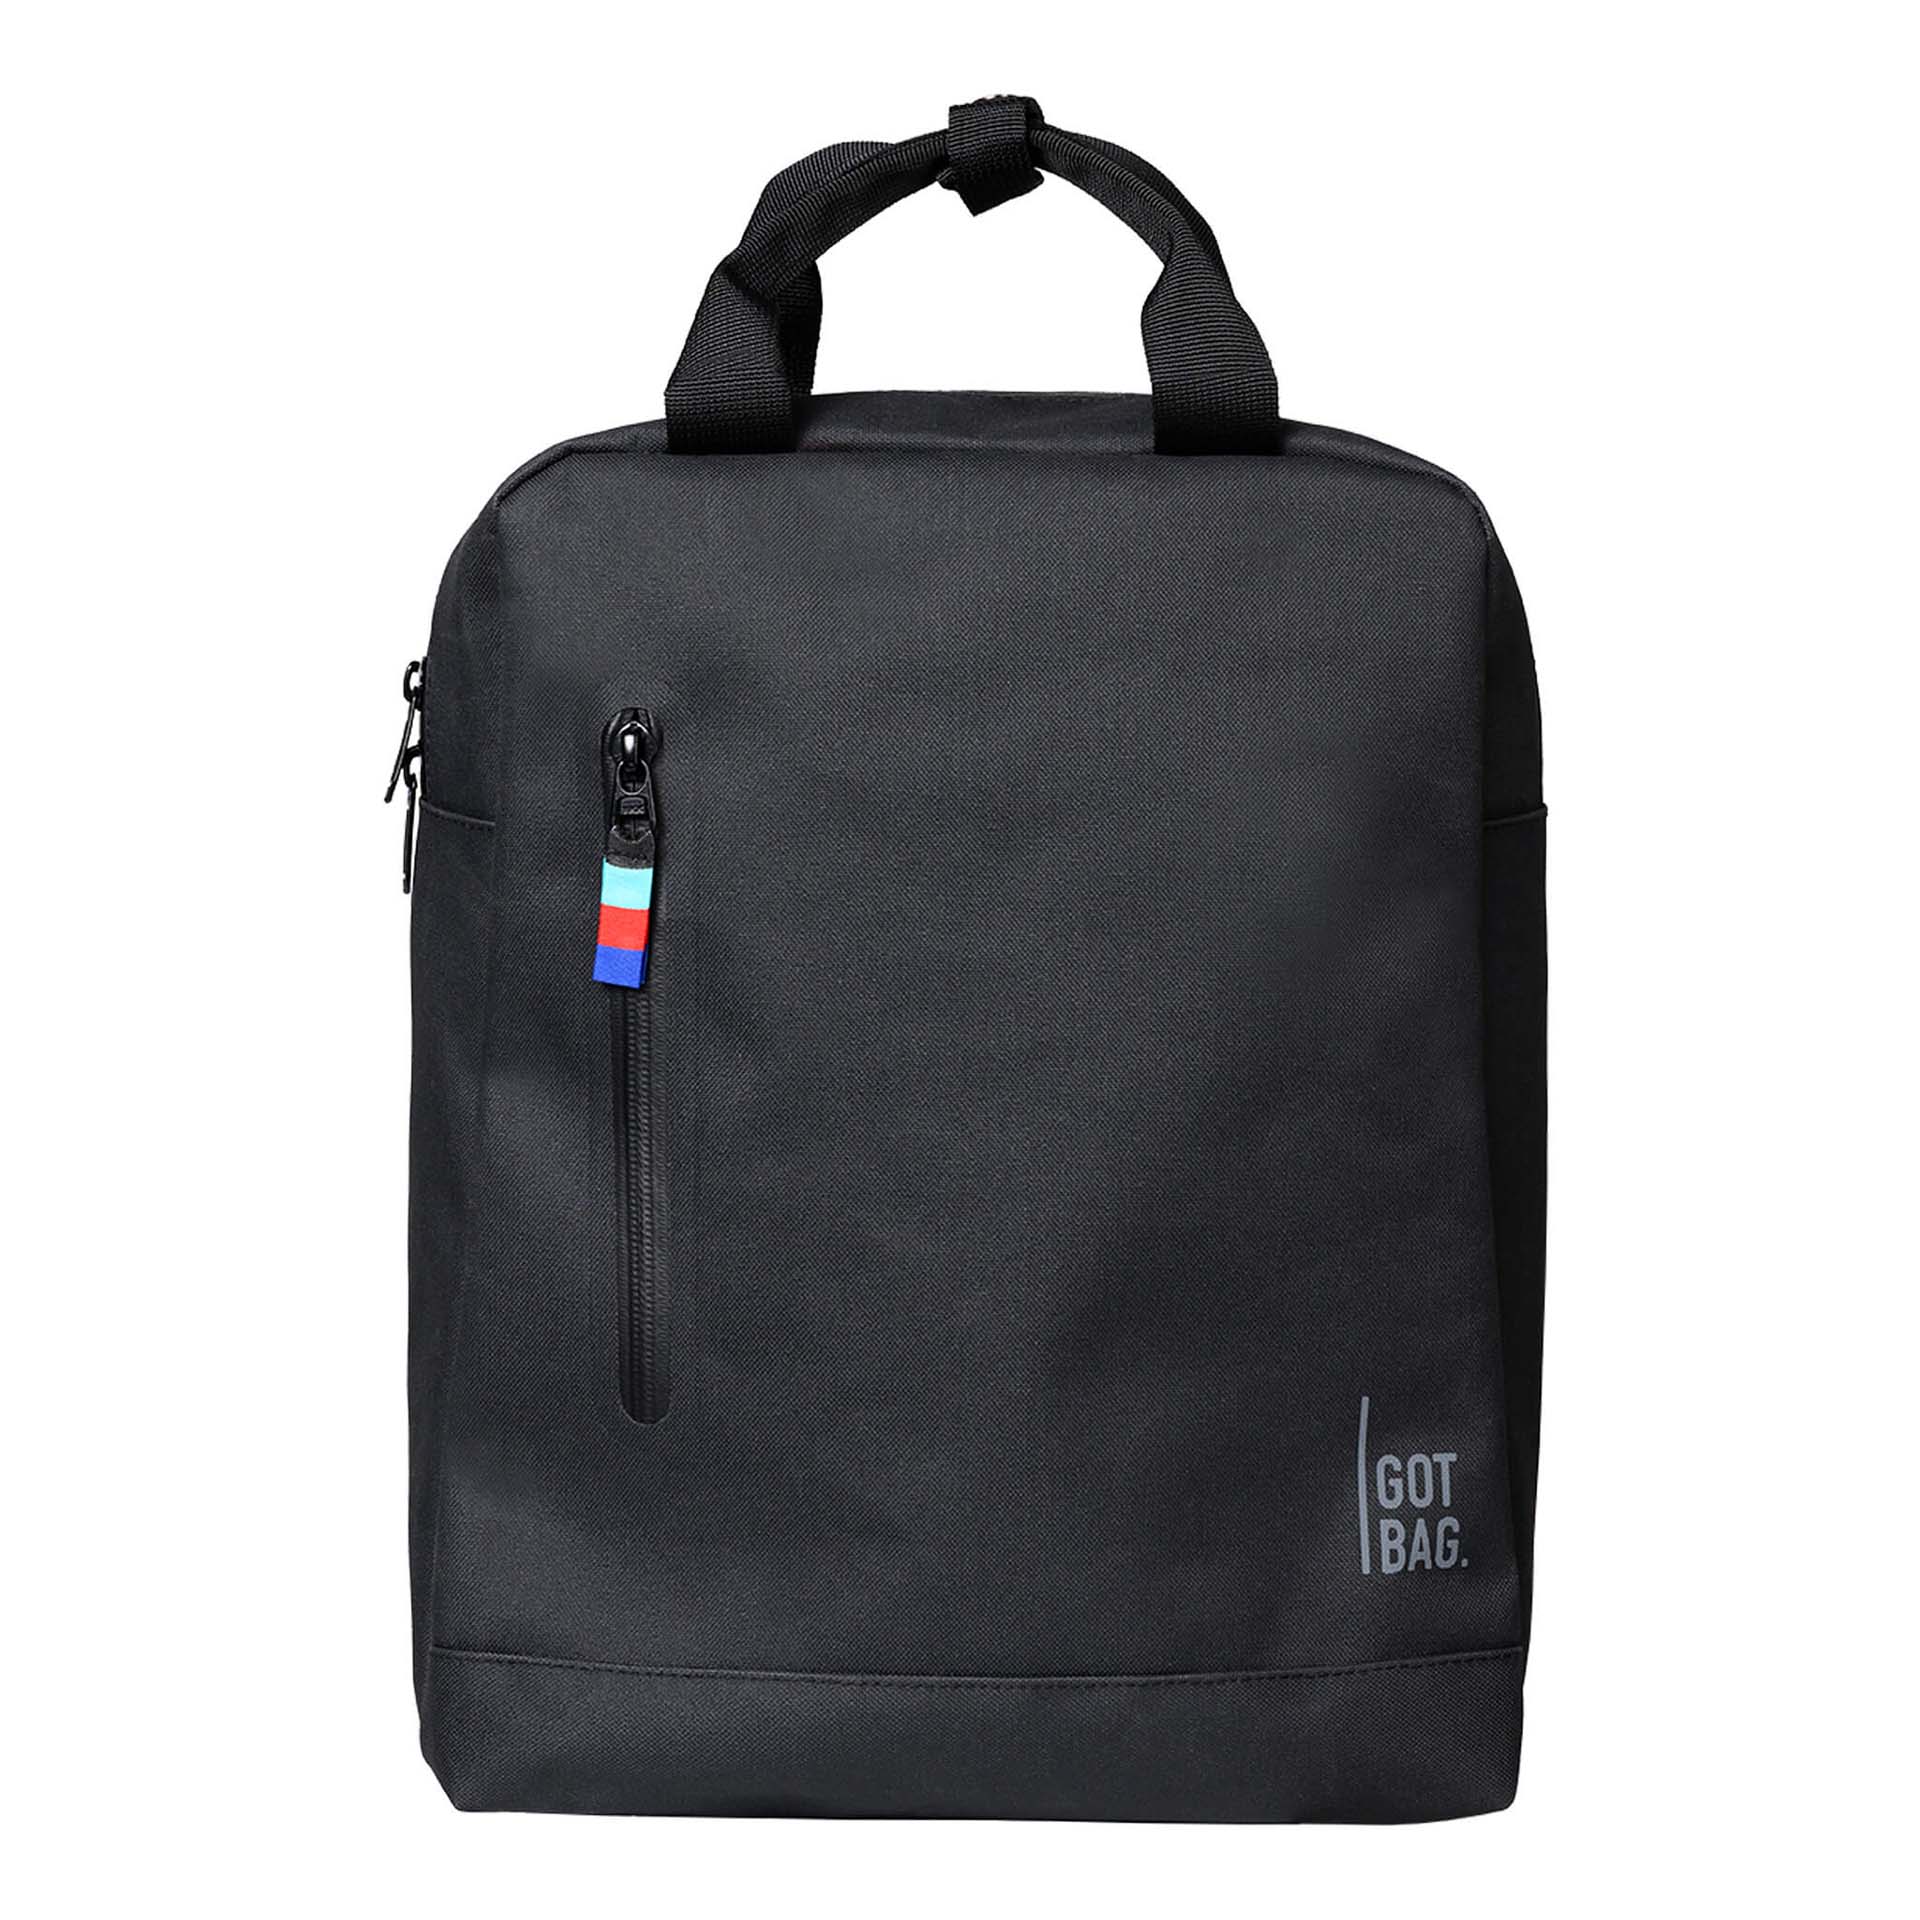 Got Bag Daypack Backpack Black